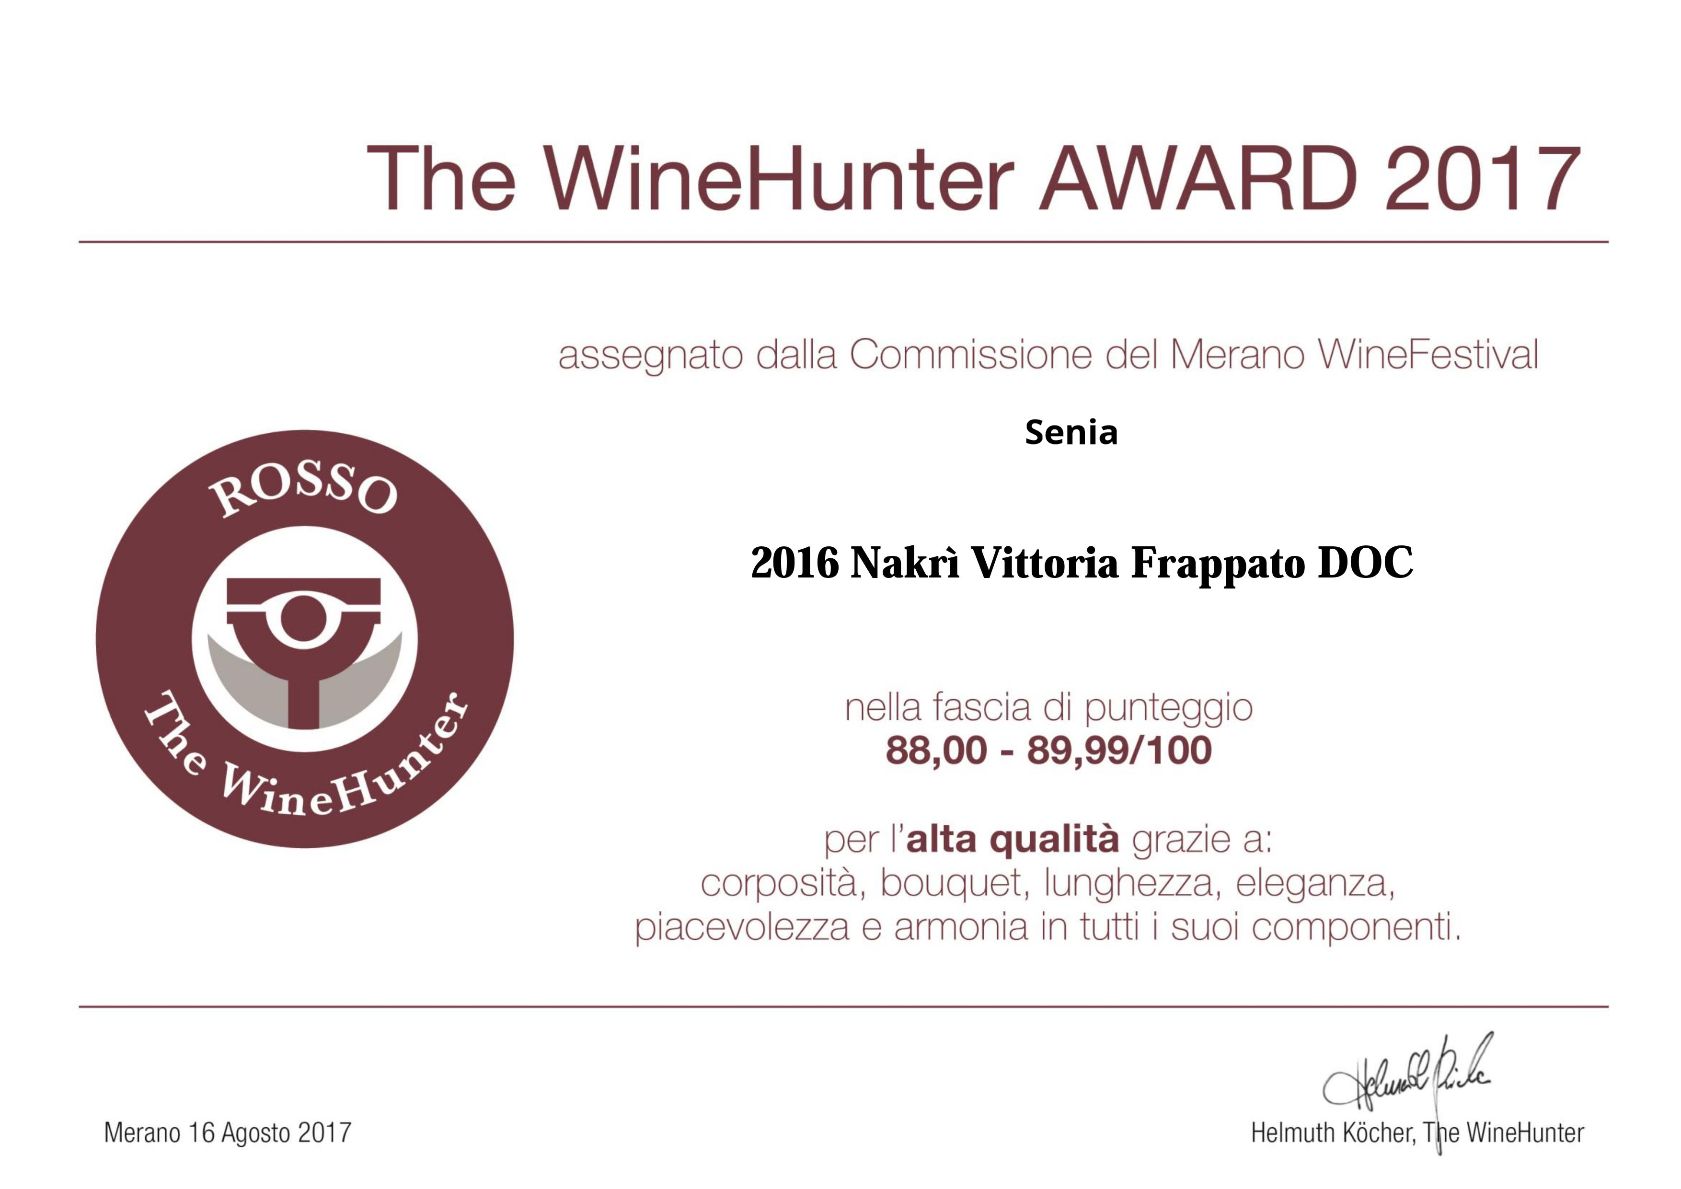 Il nostro Nakrì Vittoria Frappato Doc annata 2016 premiato dai giudici del Merano Wine Festival